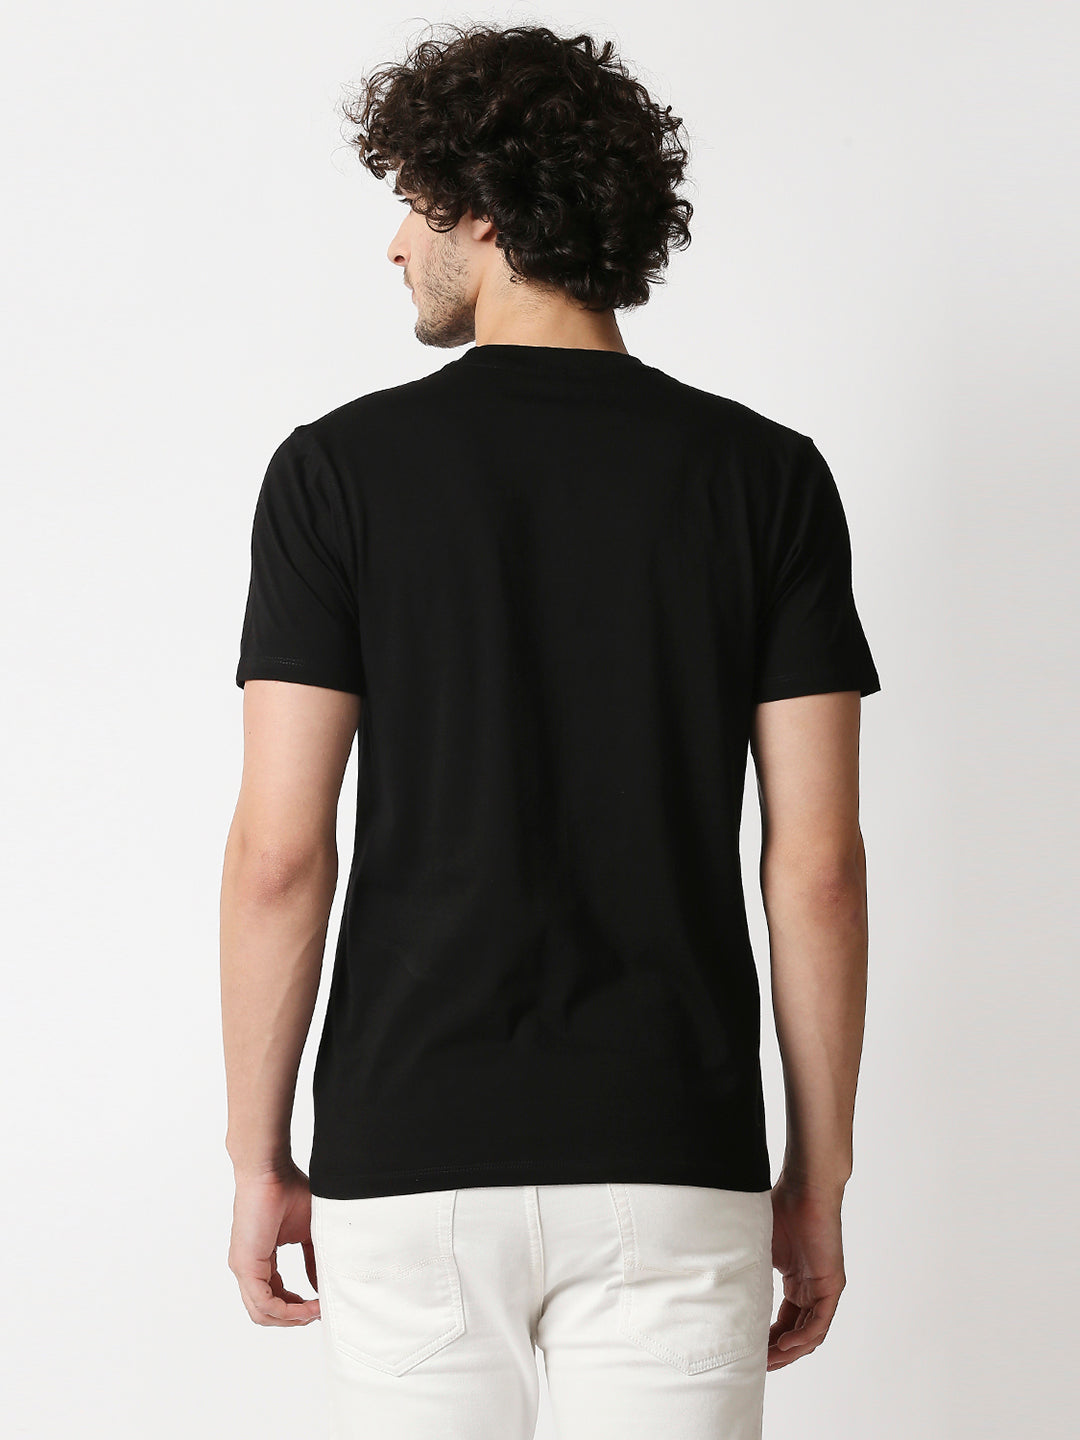 Buy Men's Black Regular fit Chest print T-shirt.